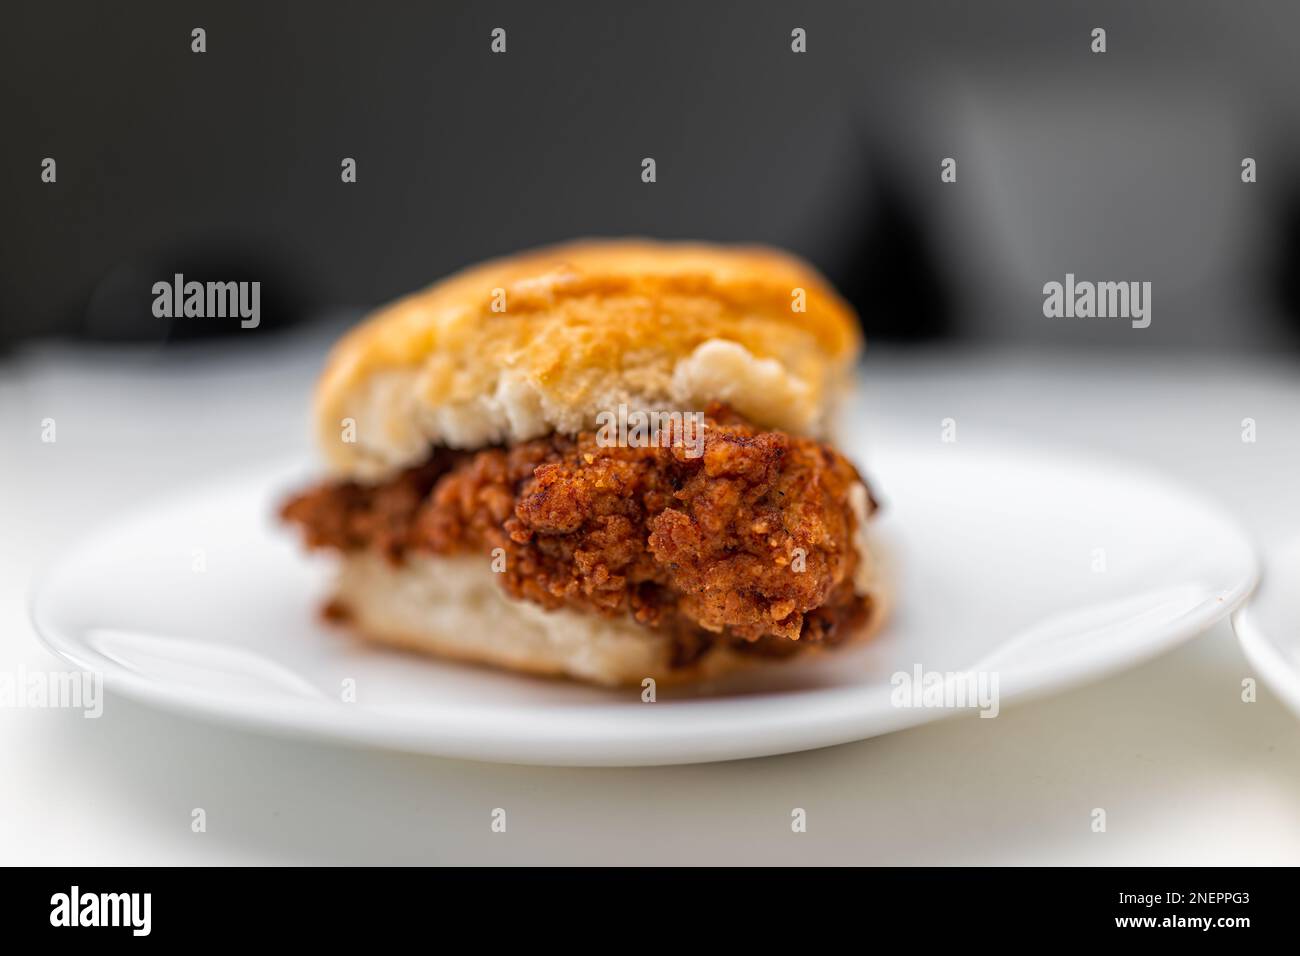 Hähnchen-Sandwich frittiertes knuspriges Fleisch auf Frühstückskeksen-Brötchen-Brot, frisches Fast Food auf einem weißen Hintergrund Küchentisch-Teller Makro-Nahaufnahme Stockfoto